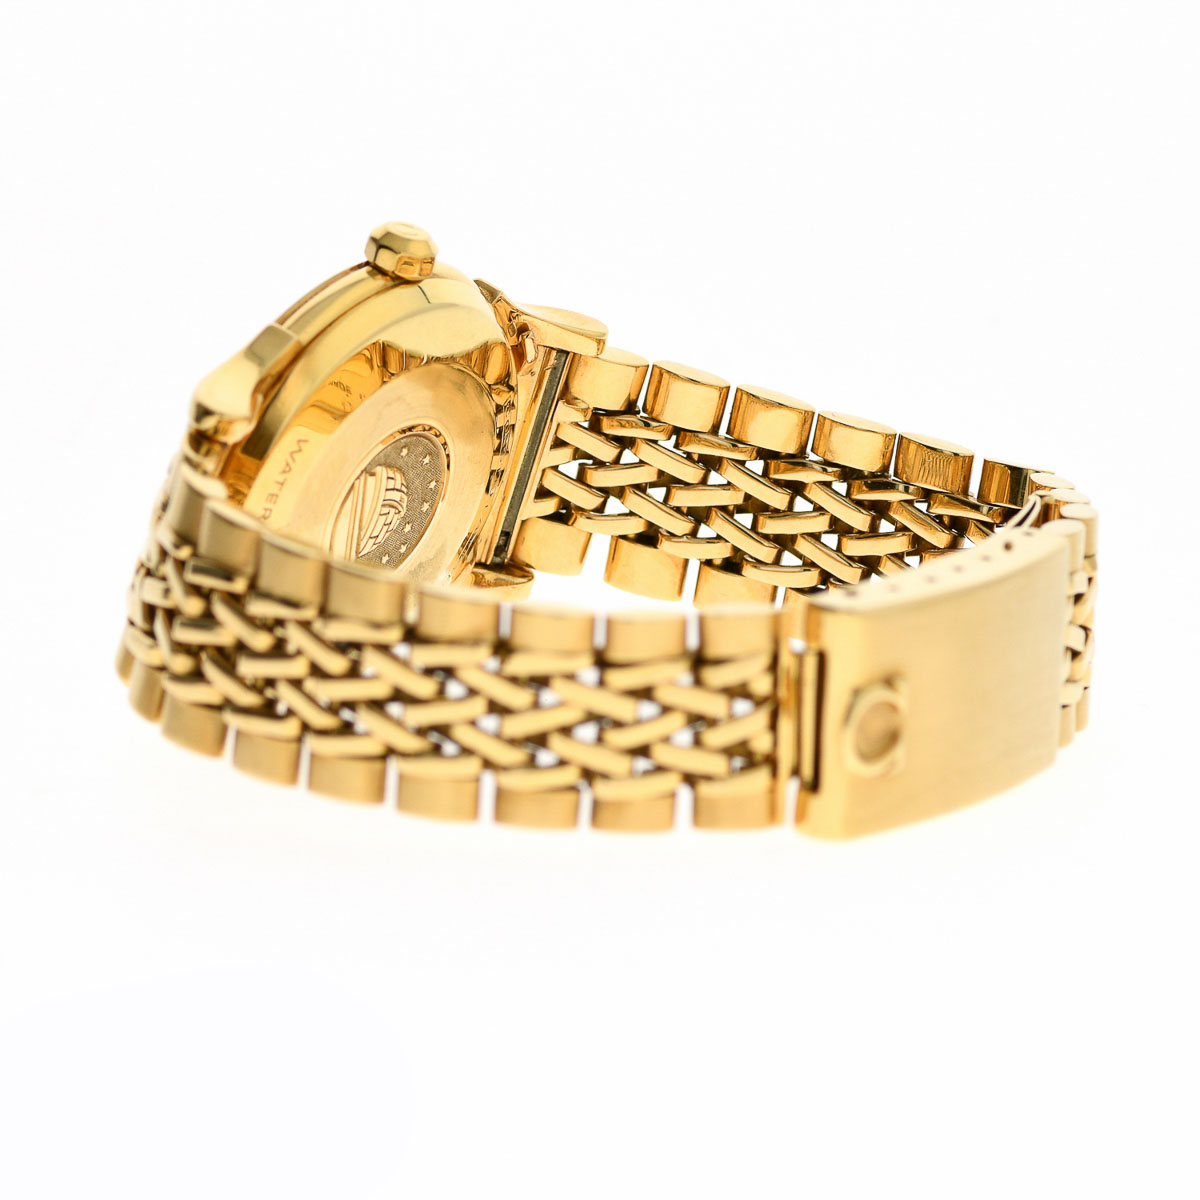 OMEGA constellation gold bracelet19